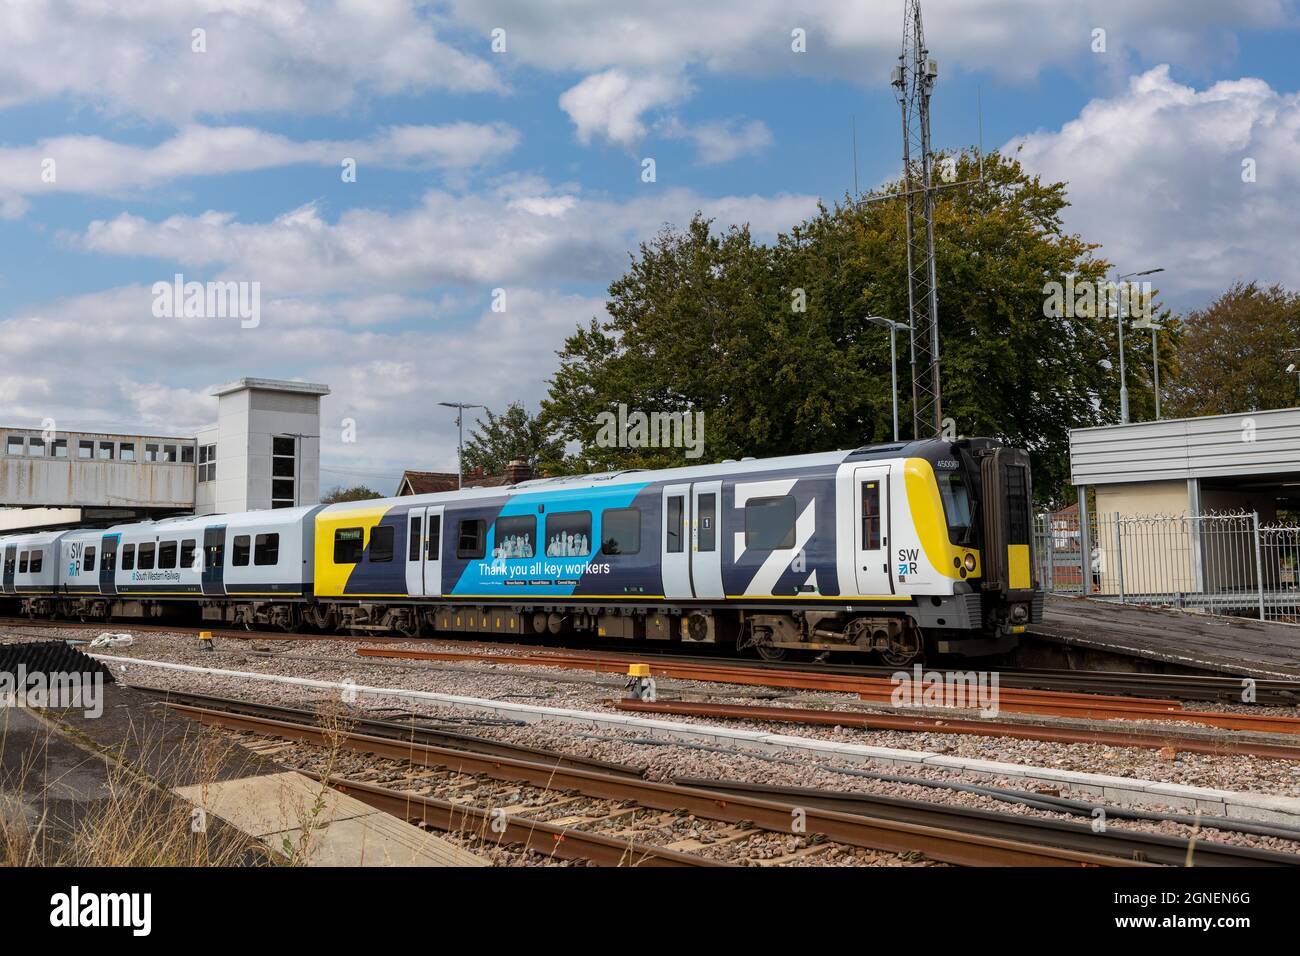 Treno della ferrovia sud-ovest che passa attraverso la stazione di Havant. Livrea personalizzata da mostrare grazie al NHS durante la pandemia covid. Foto Stock